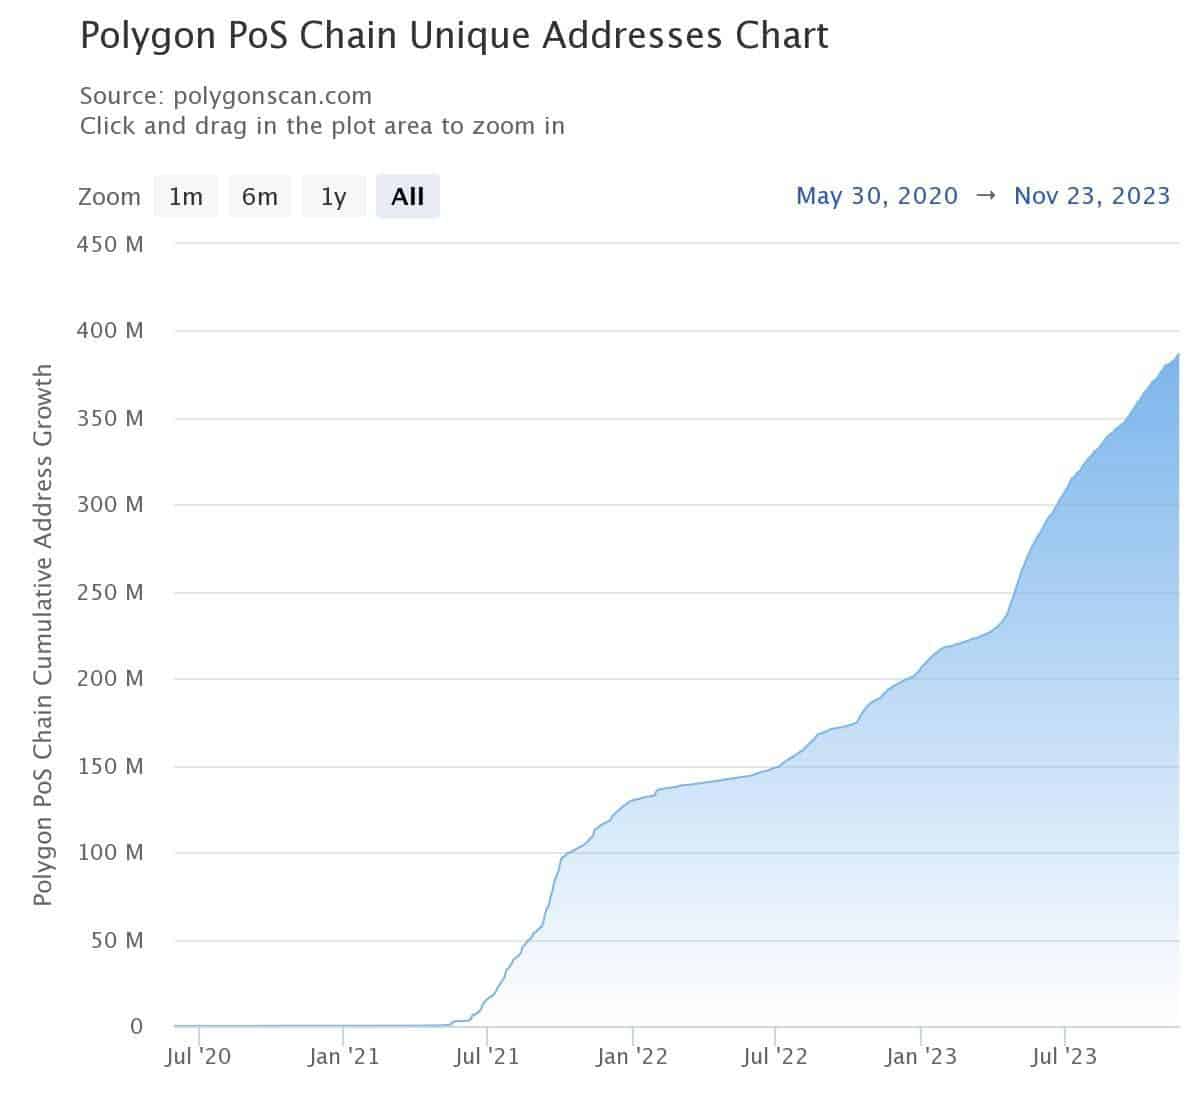 Comment les adresses actives des polygones sont passées de 120 385 à 3 millions en XNUMX ans